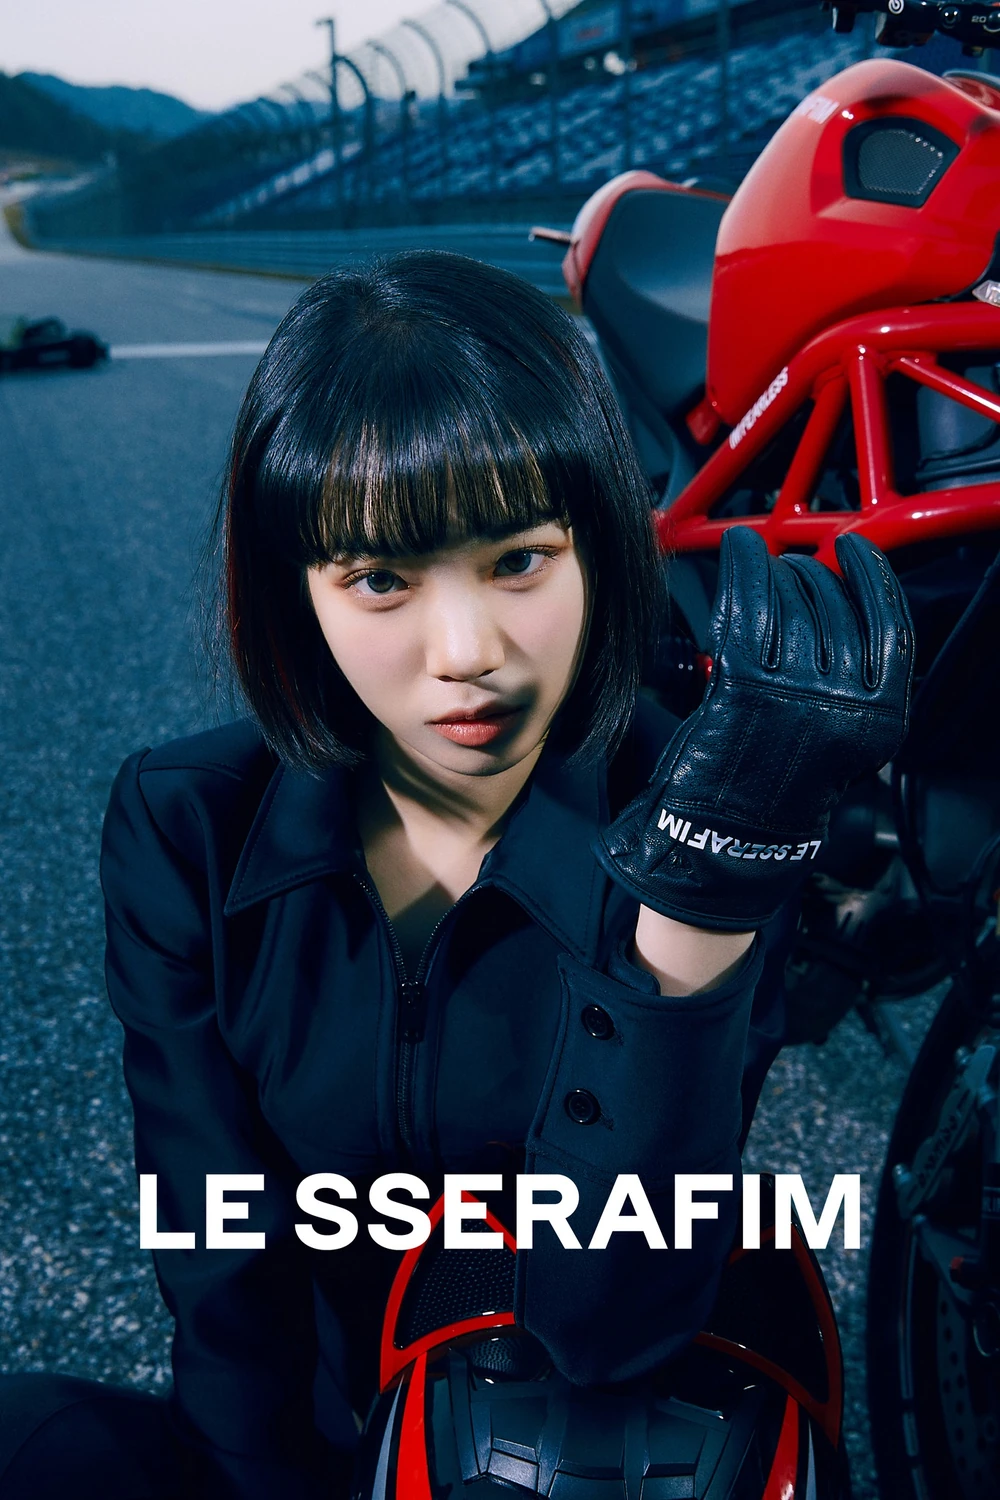 Le Sserafim I'm Fearless Chaewon Concept Teaser Picture Image Photo Kpop K-Concept 1